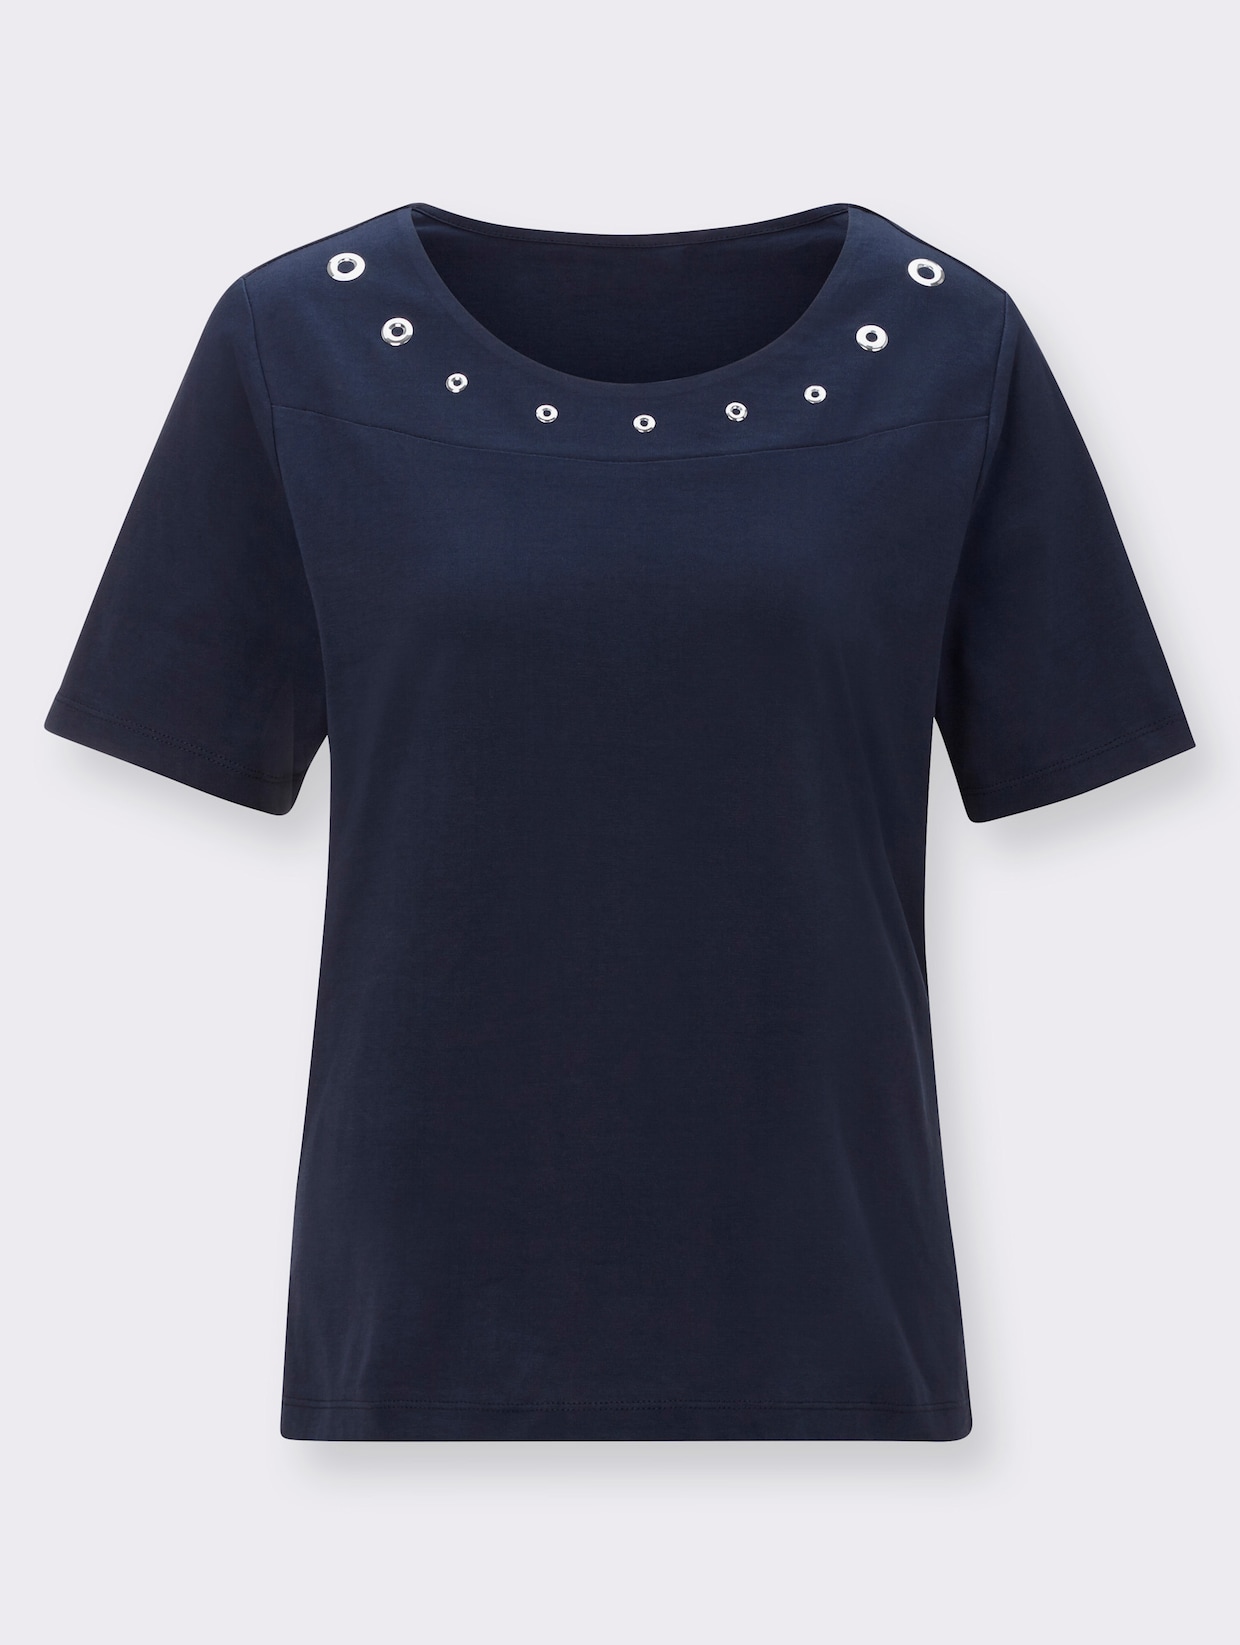 Tričko s krátkým rukávem - noční modrá